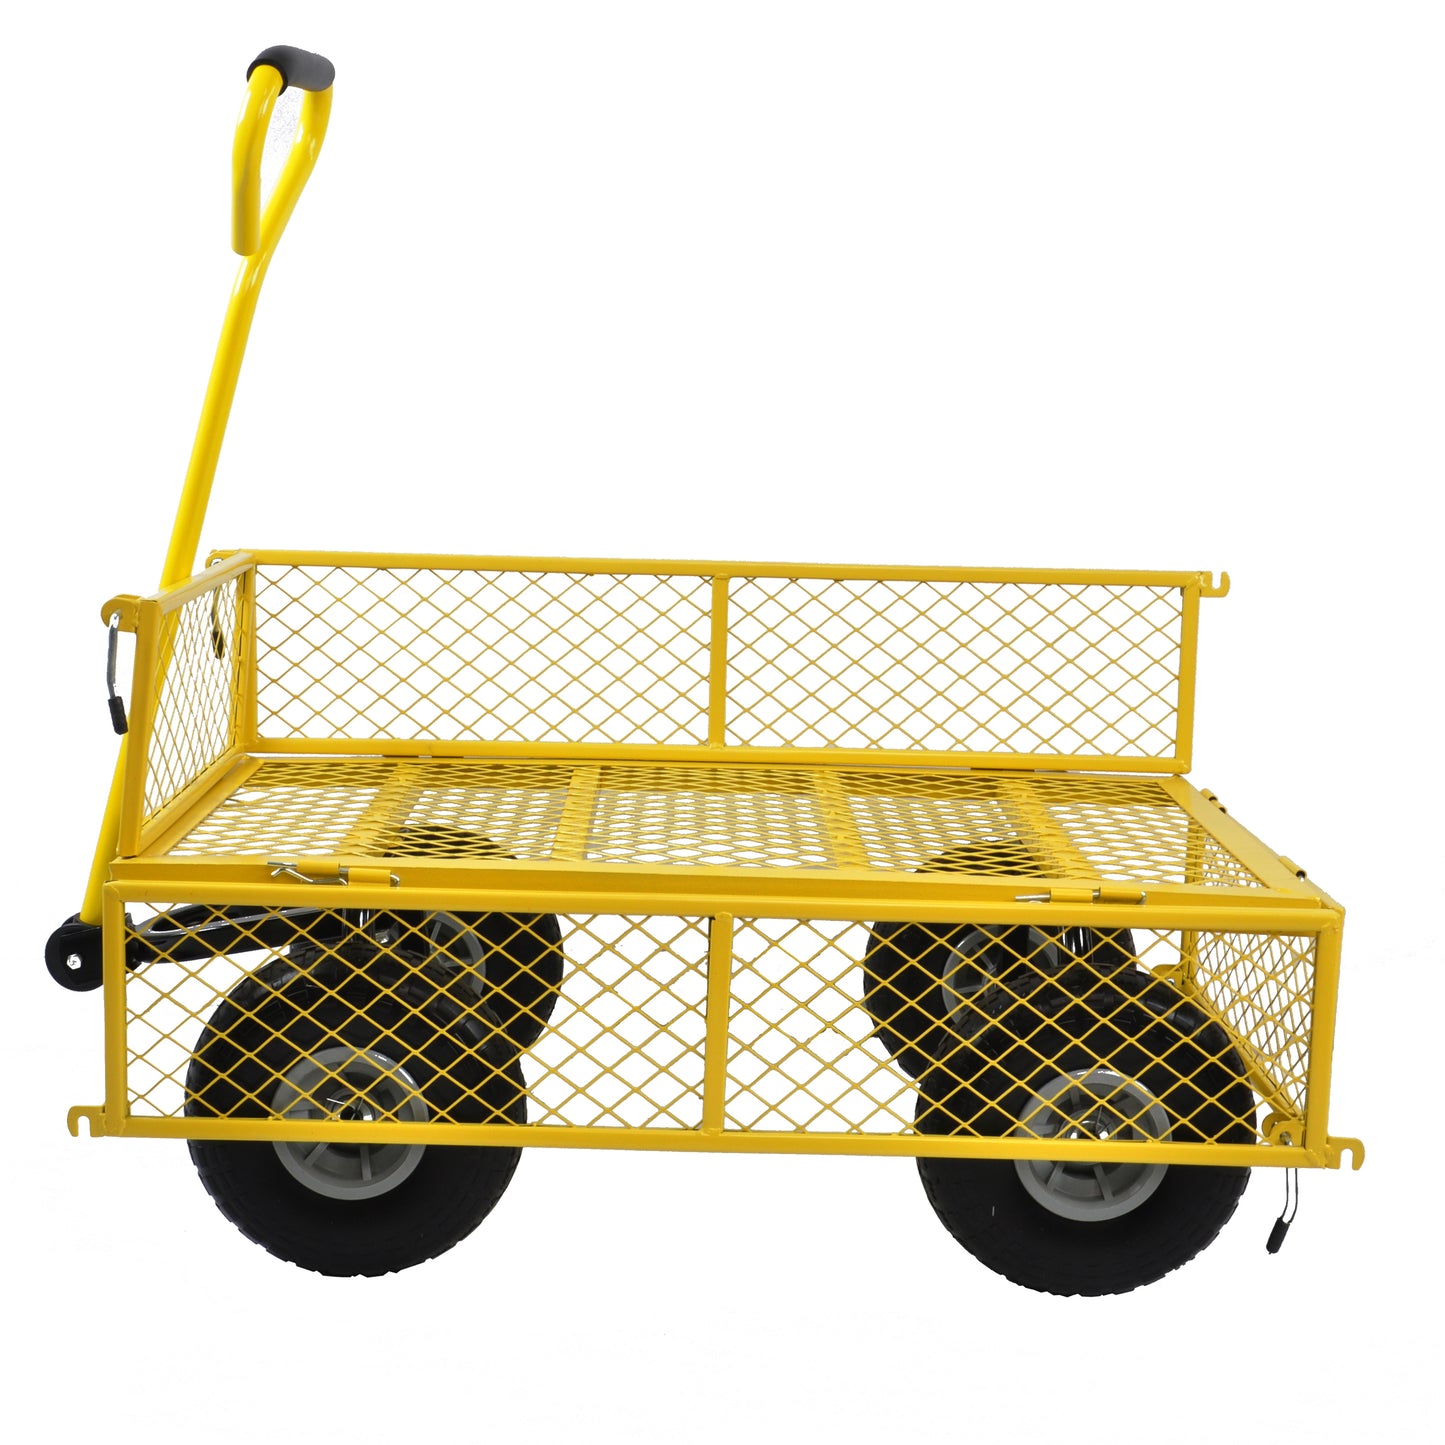 Tool truck, truck, garden truck, truck, easier to transport firewood, PU wheel (yellow)